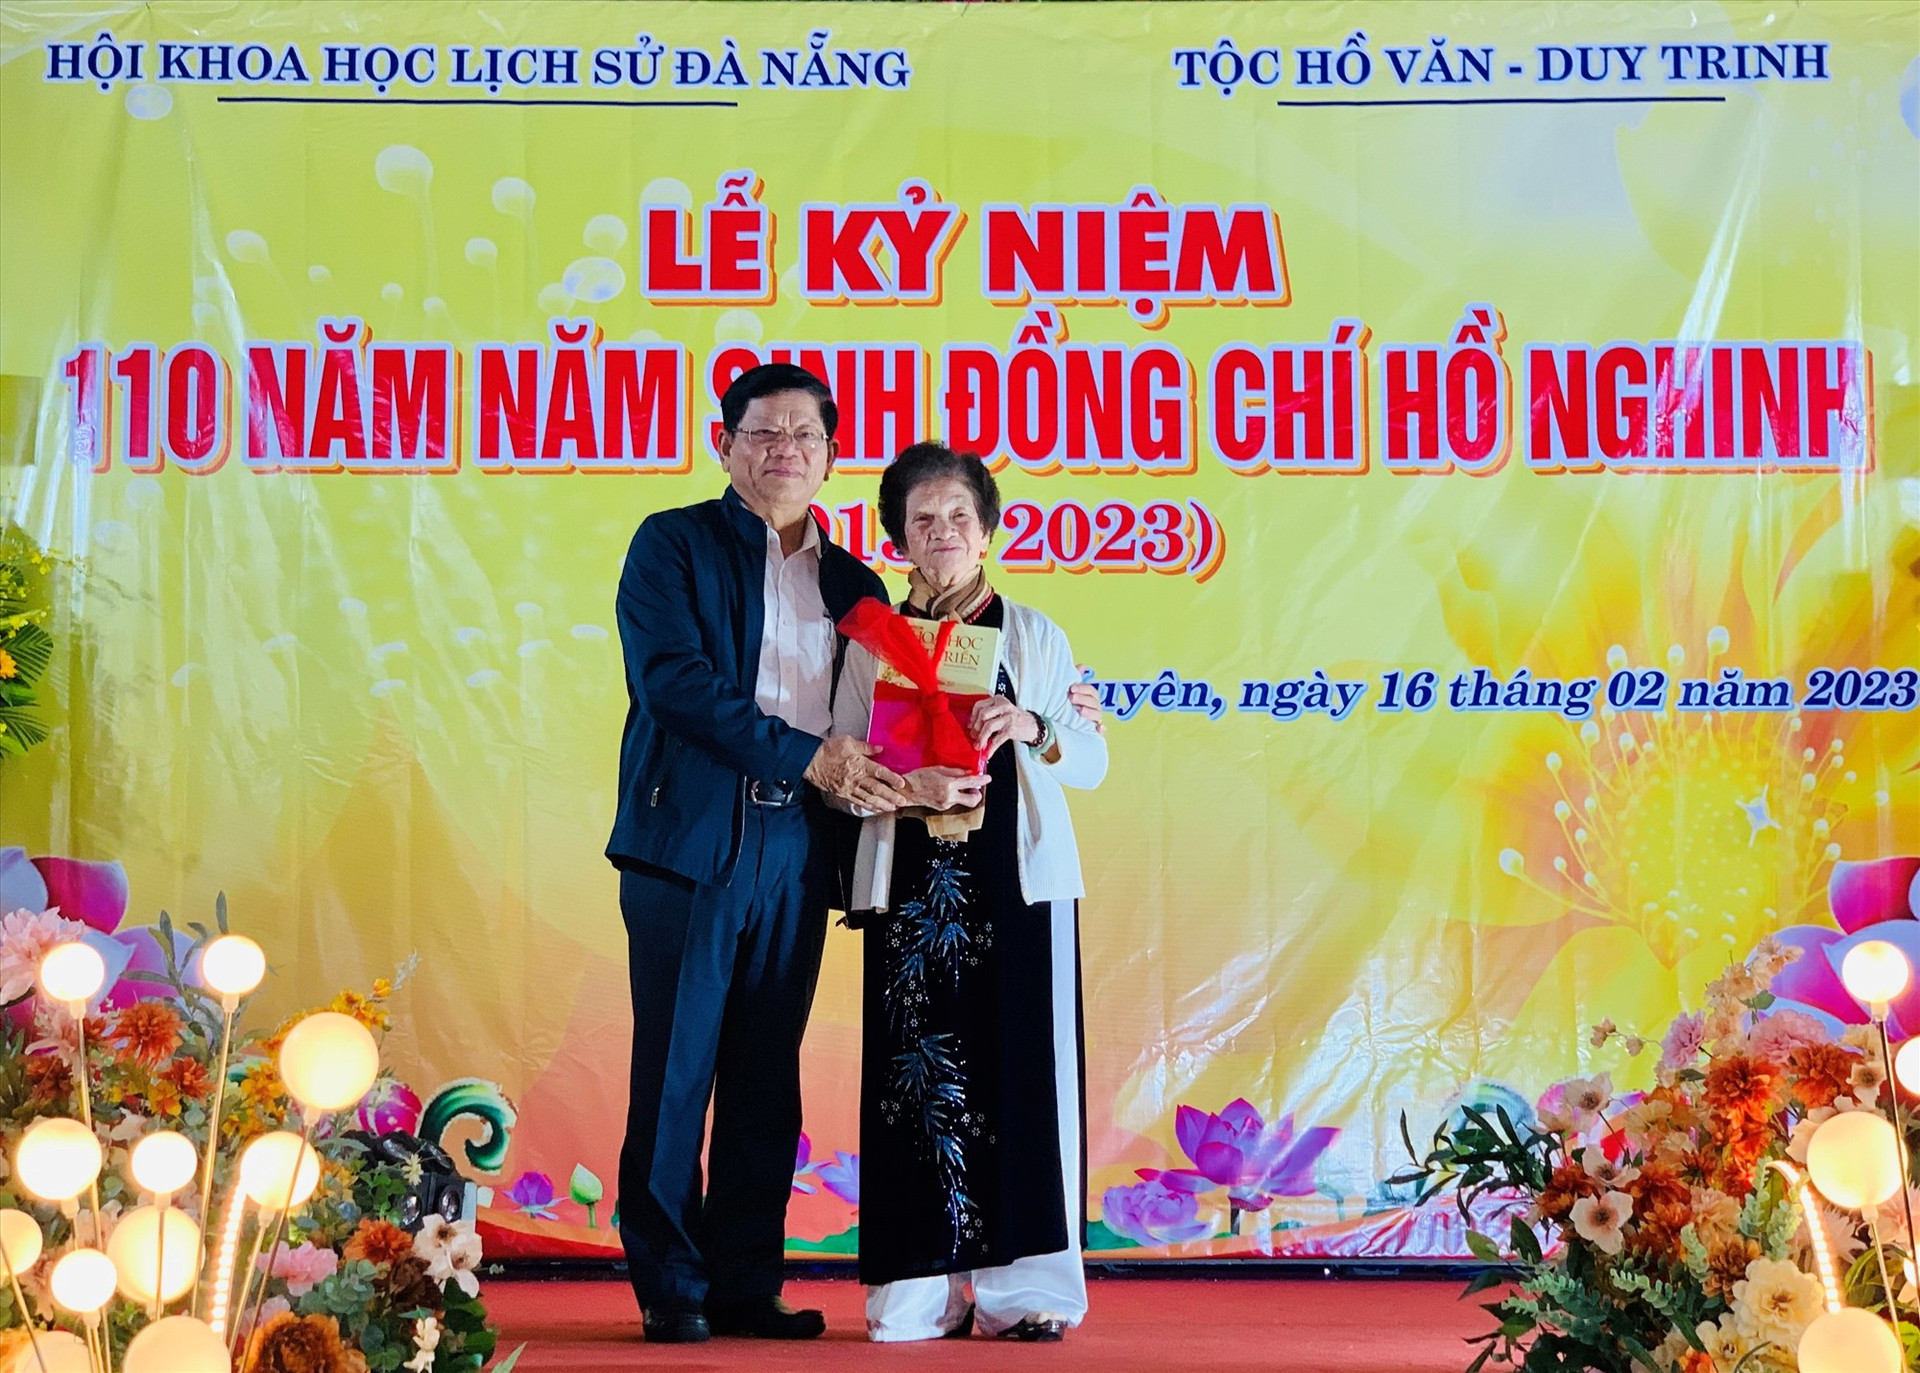 Liên hiệp Các hội khoa học kỹ thuật TP.Đà Nẵng trao tặng đặc san Khoa học và Phát triển cho đại diện gia đình đồng chí Hồ Nghinh.     Ảnh: N.T